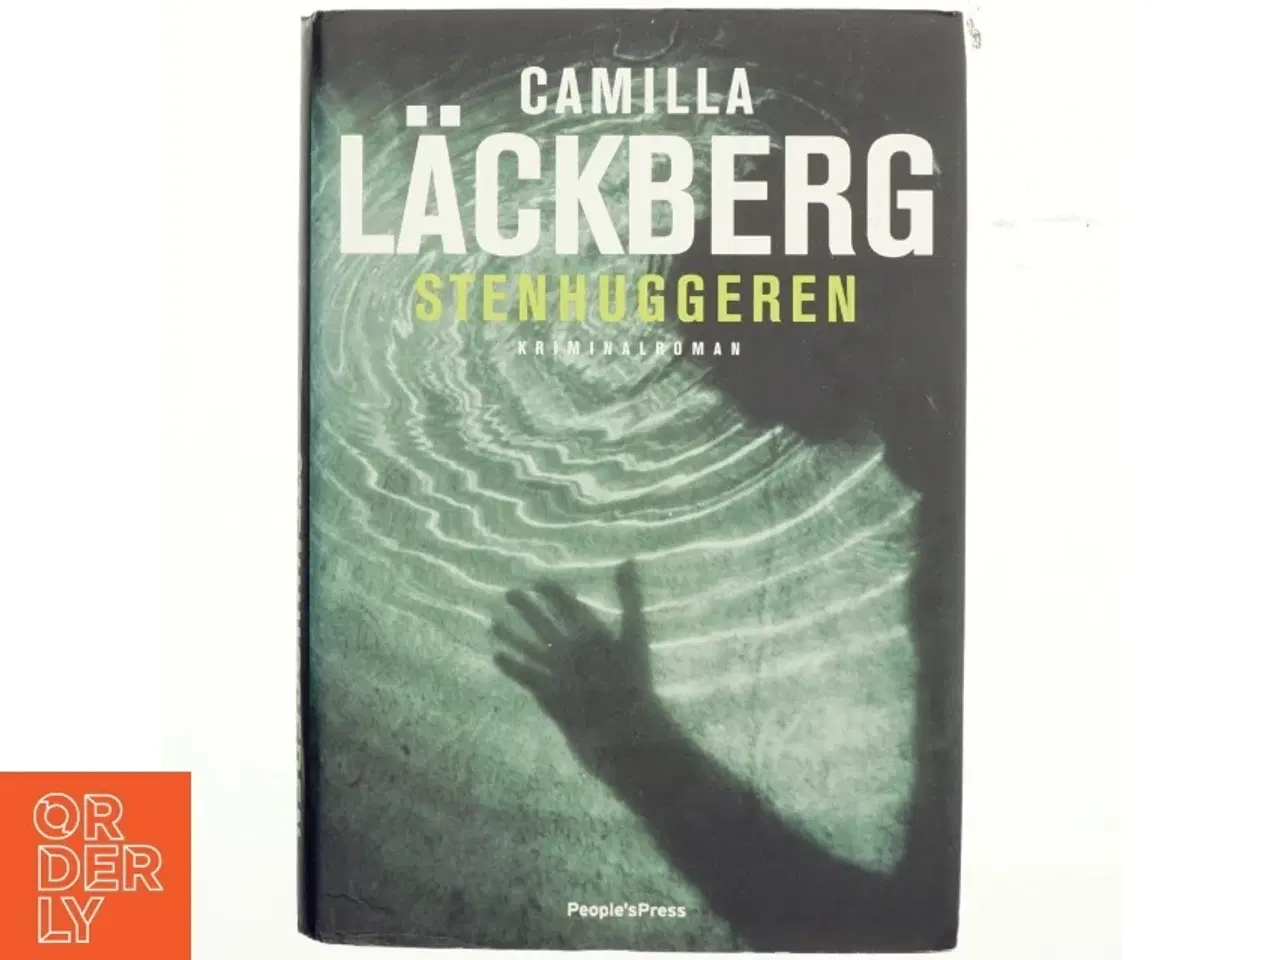 Billede 1 - Stenhuggeren : kriminalroman af Camilla Läckberg (Bog)